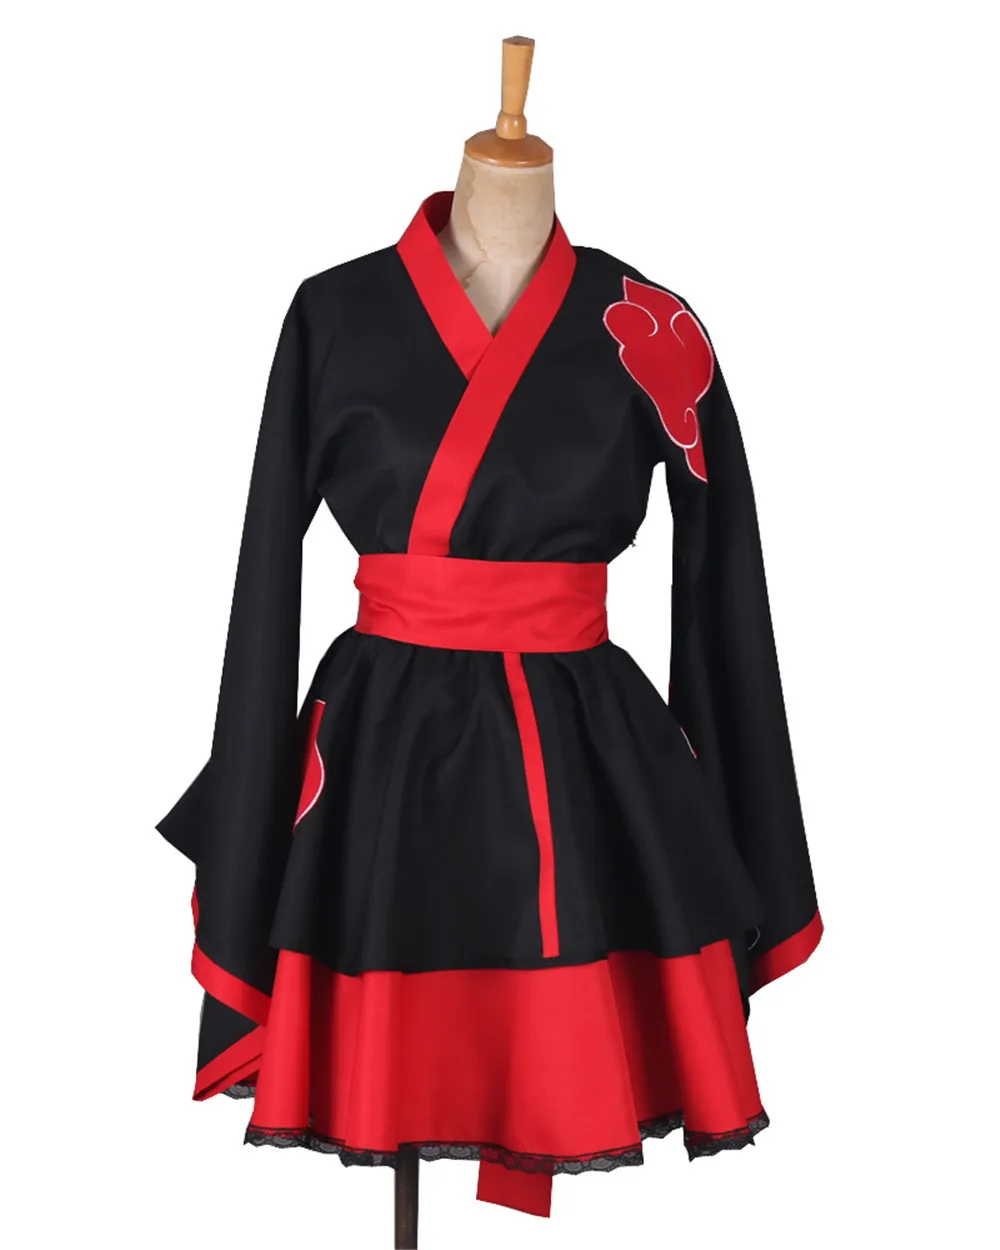 

Naruto: Shippuden Akatsuki Costumes NARUTO Sasuke lolita Skirts Lolita kimono dress anime Cosplay Halloween party uniform